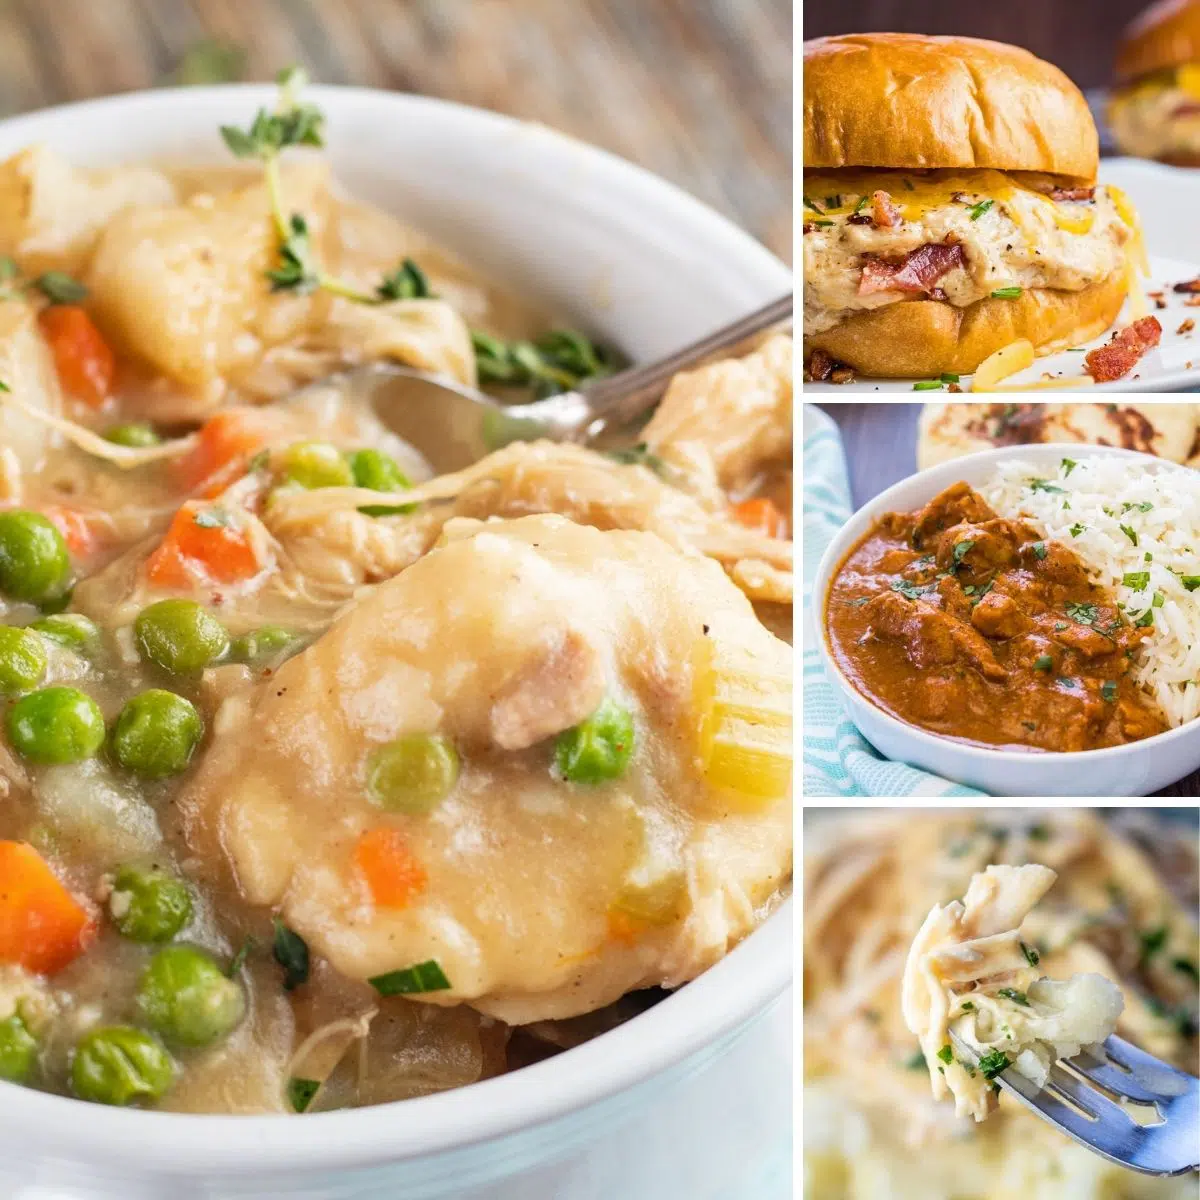 Le migliori ricette di pollo crockpot che puoi realizzare nella tua pentola a cottura lenta per gustosi collage di pasti con 4 immagini.